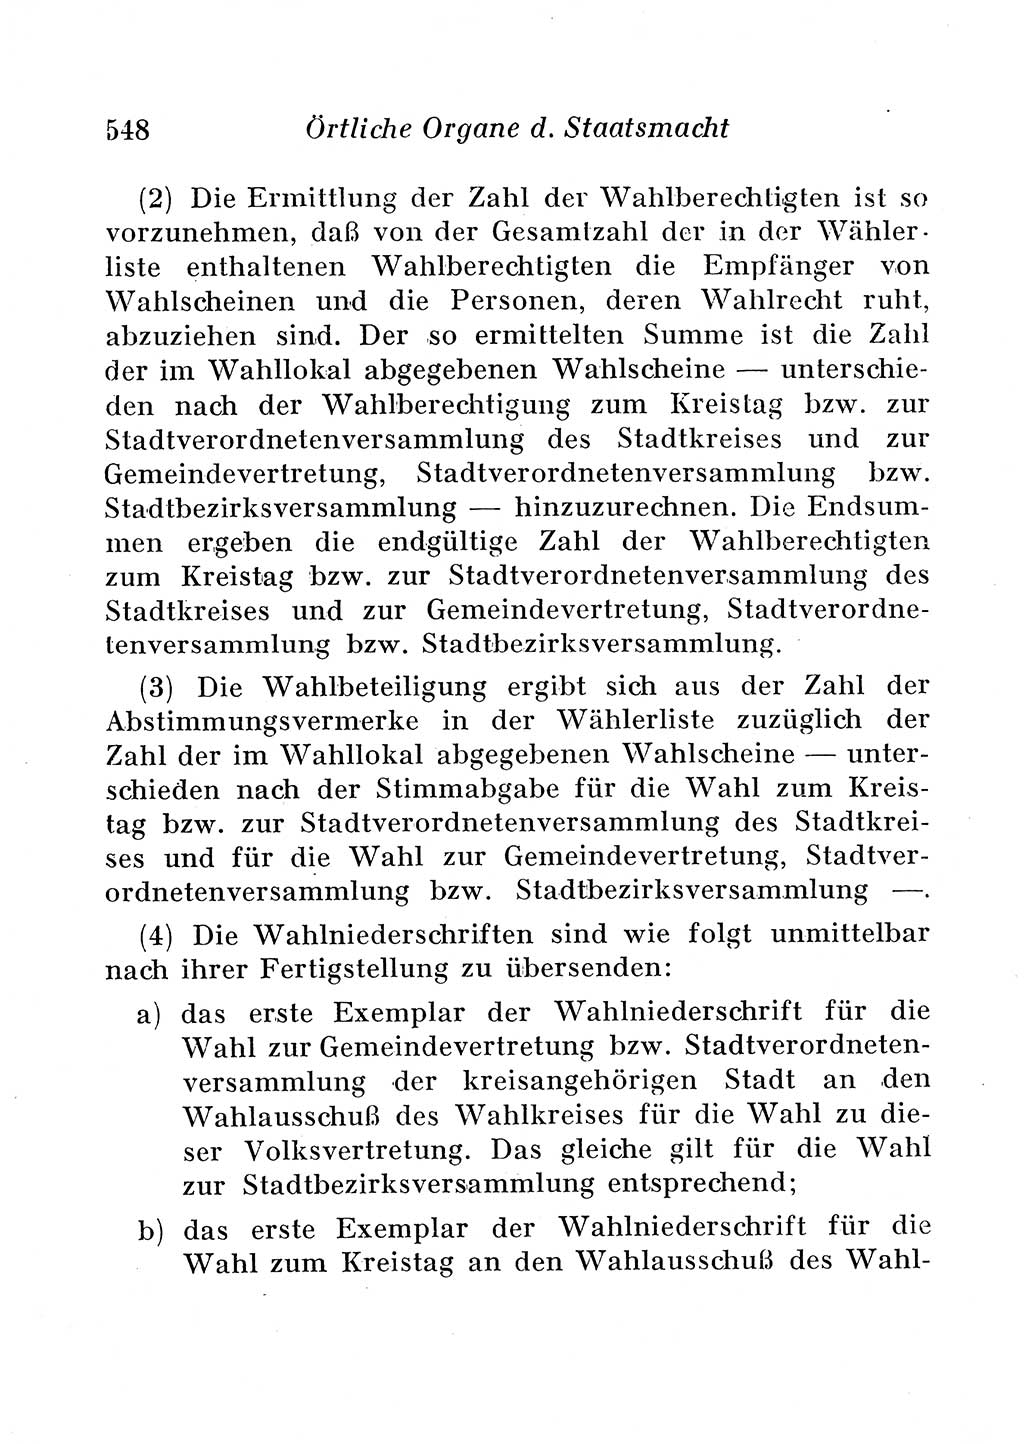 Staats- und verwaltungsrechtliche Gesetze der Deutschen Demokratischen Republik (DDR) 1958, Seite 548 (StVerwR Ges. DDR 1958, S. 548)